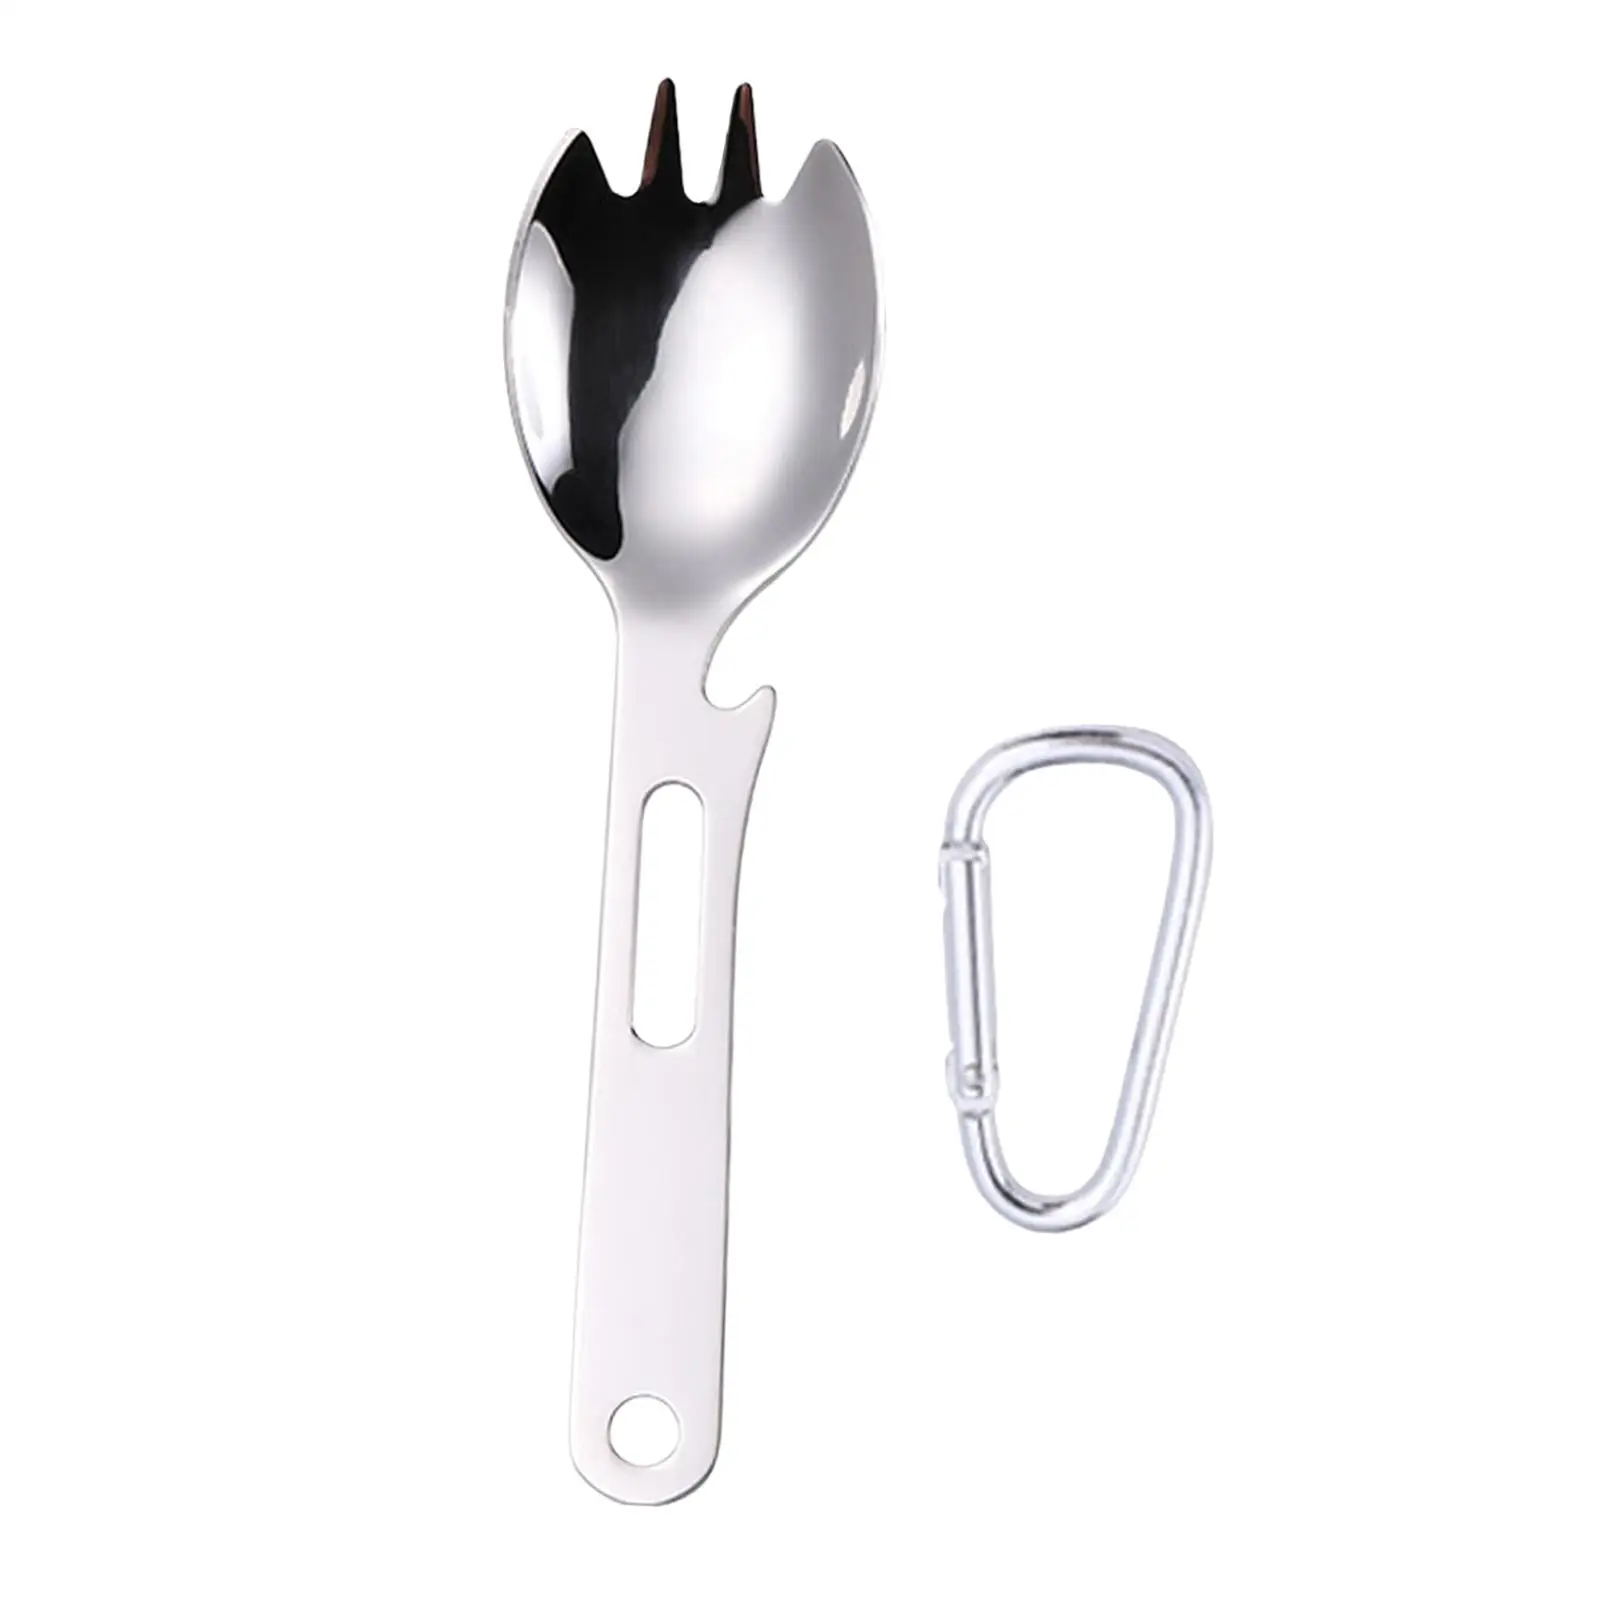 Multifunctional Spork Spoon Can Opener Dinnerware Wrench Tableware Flatware